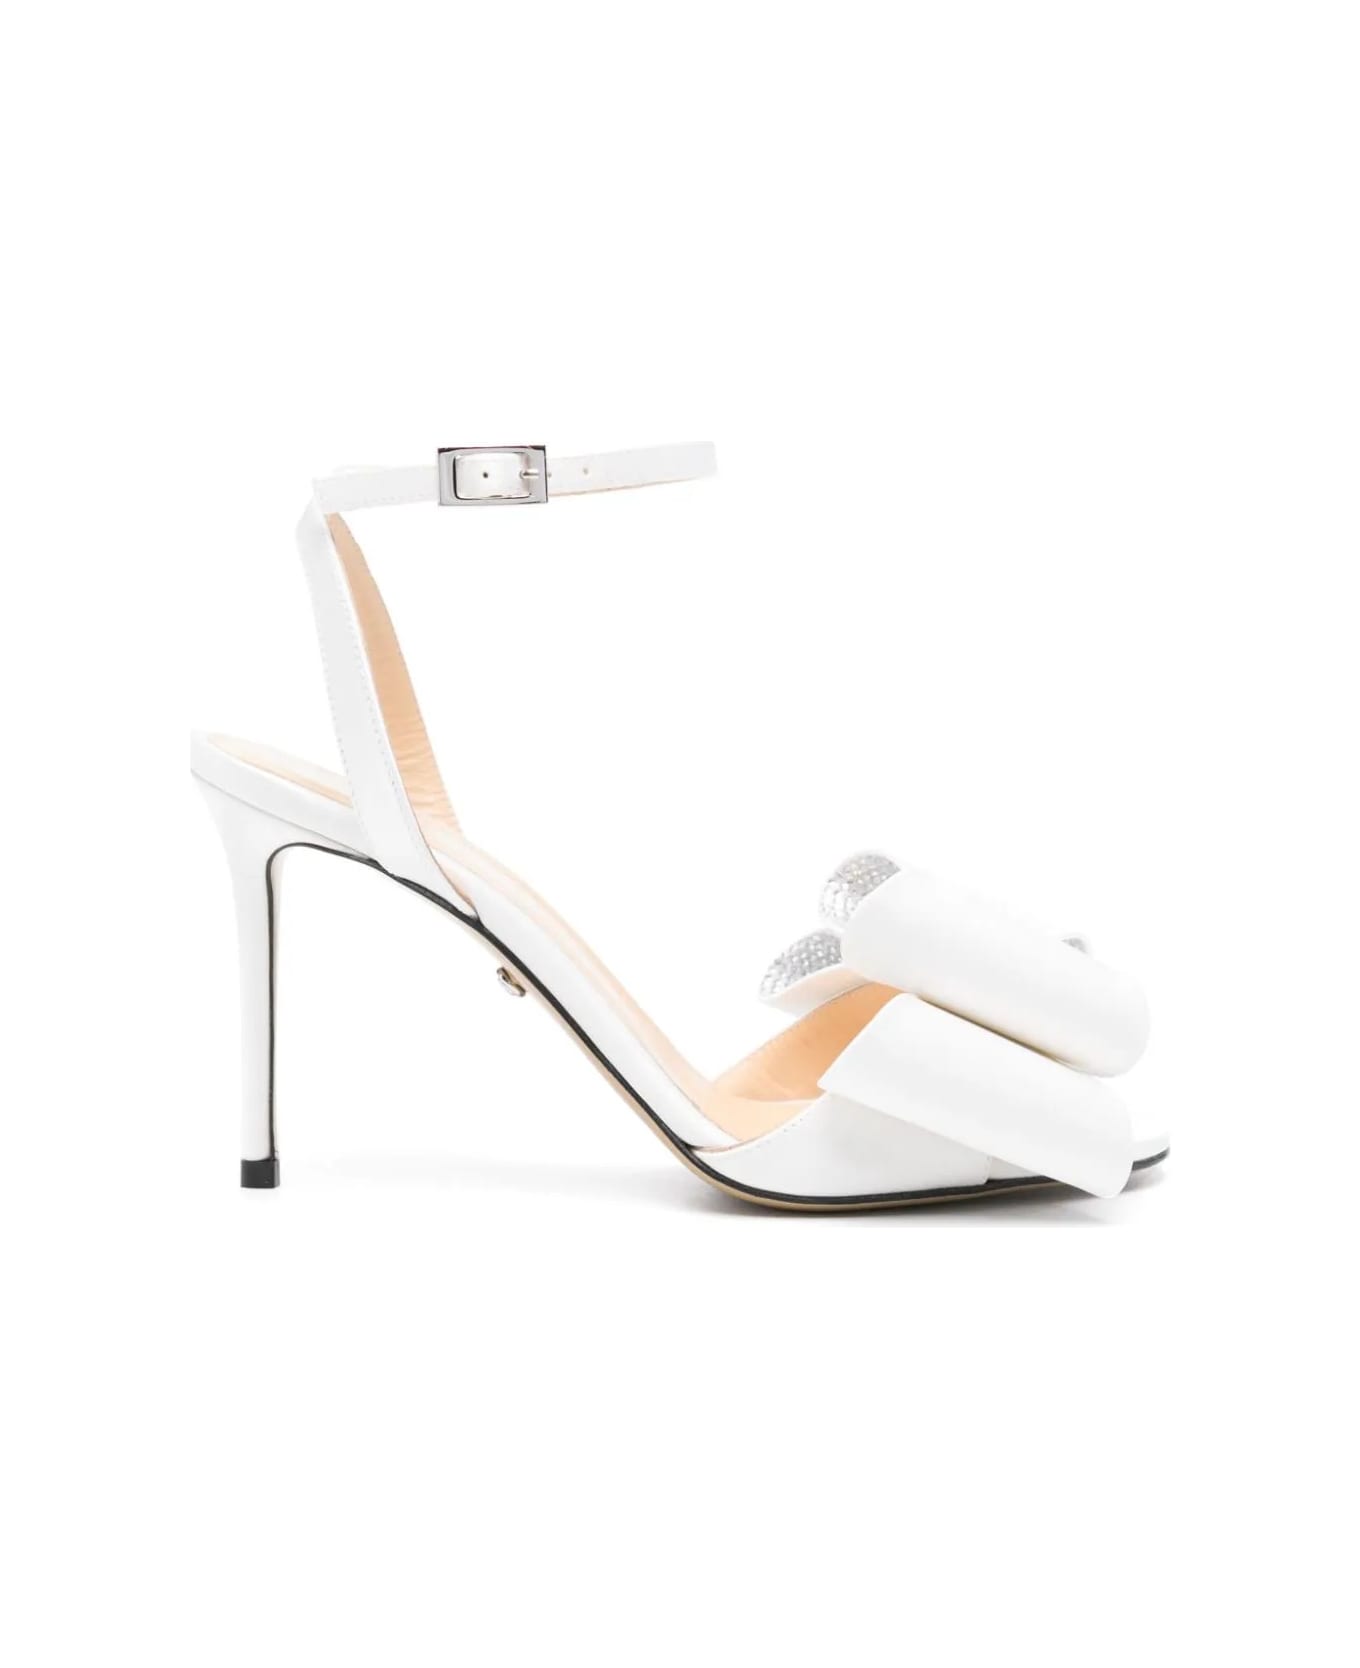 Mach & Mach Le Cadeau 95 Mm Sandals In White Satin - White